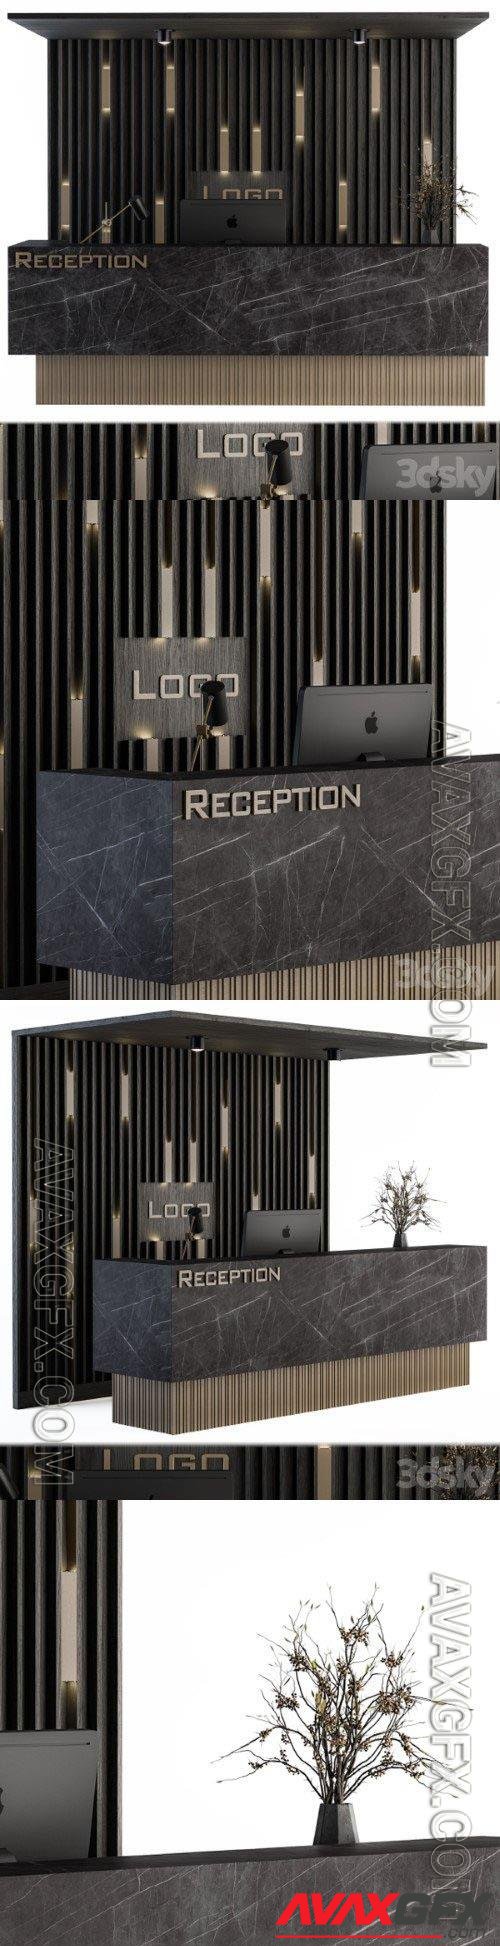 Reception Desk and Wall Decor - Set 04 - 3d model